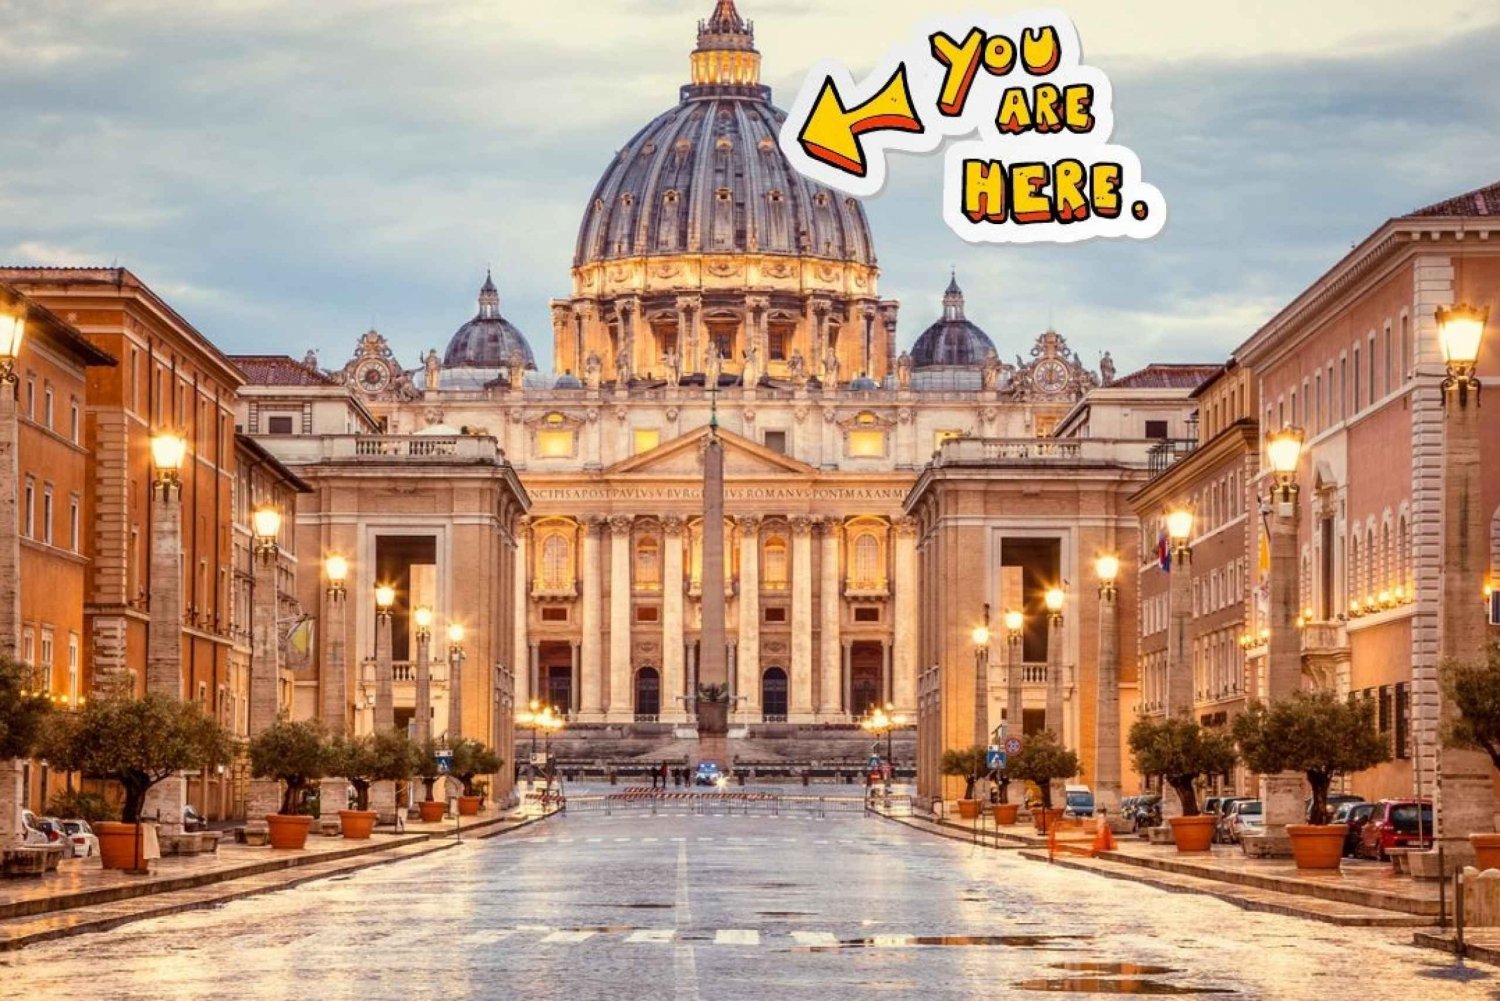 St. Peter's Dome Climb, Basilica and Vatacombs Tour